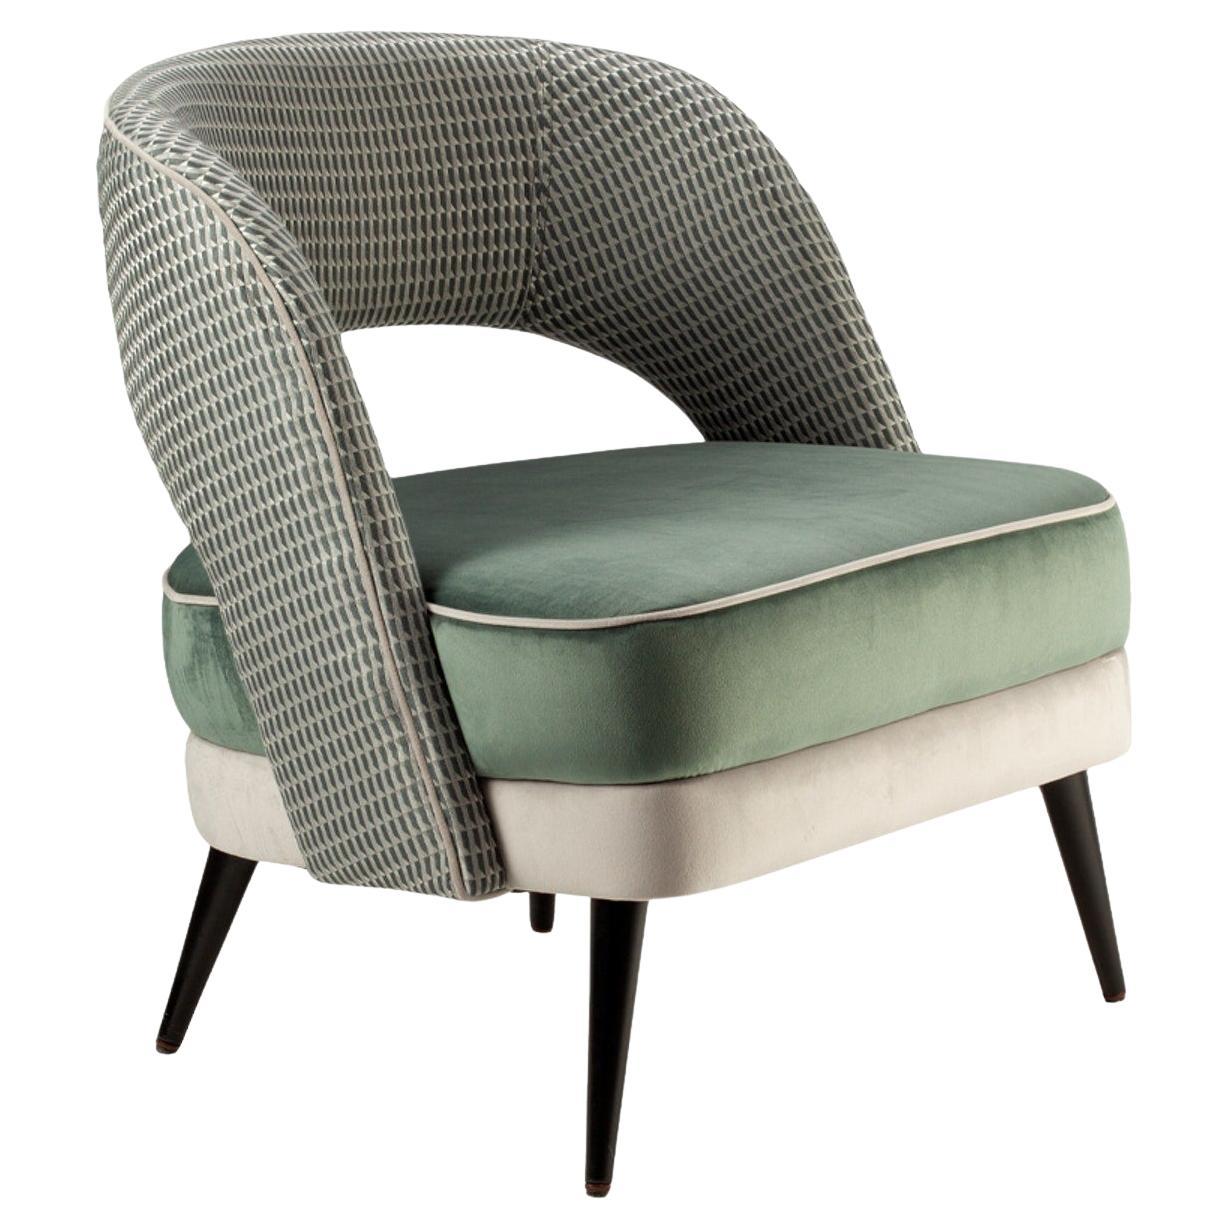 Sessel mit weicher grüner Sitzfläche und gemusterter olivgrüner Rückenlehne